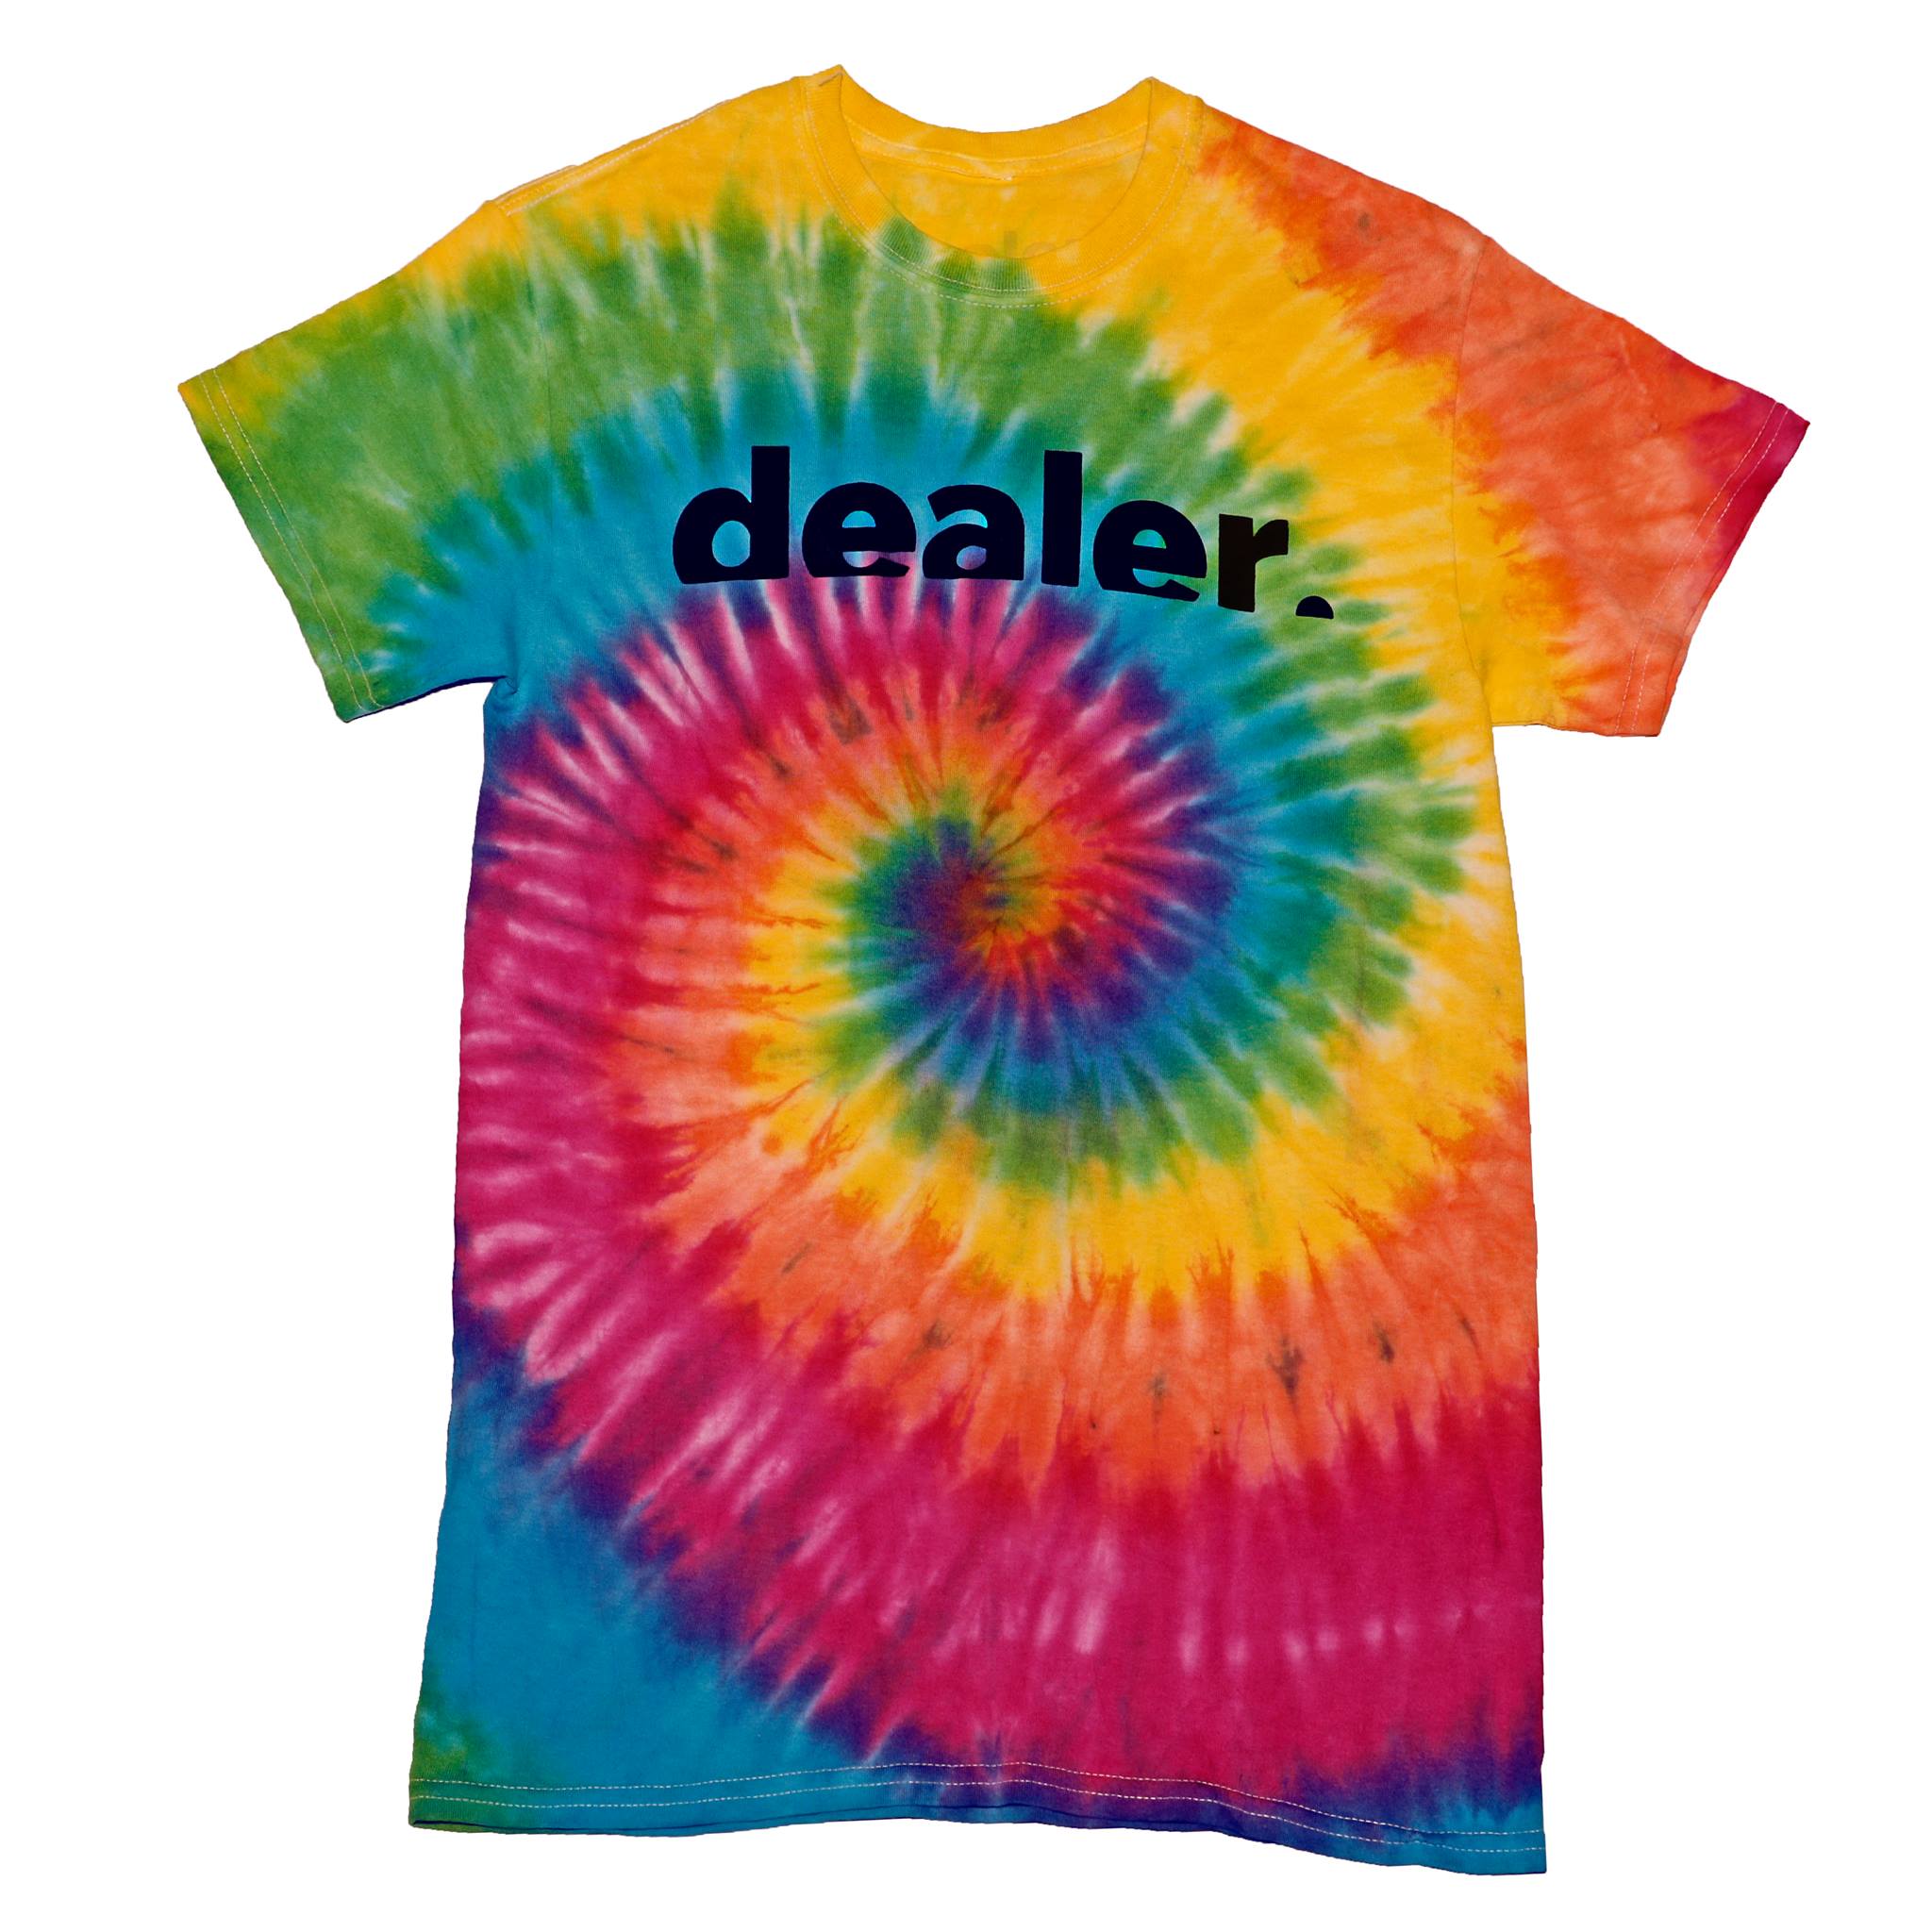 Playera Dealer Tie dye Colores – Dealer skate shop